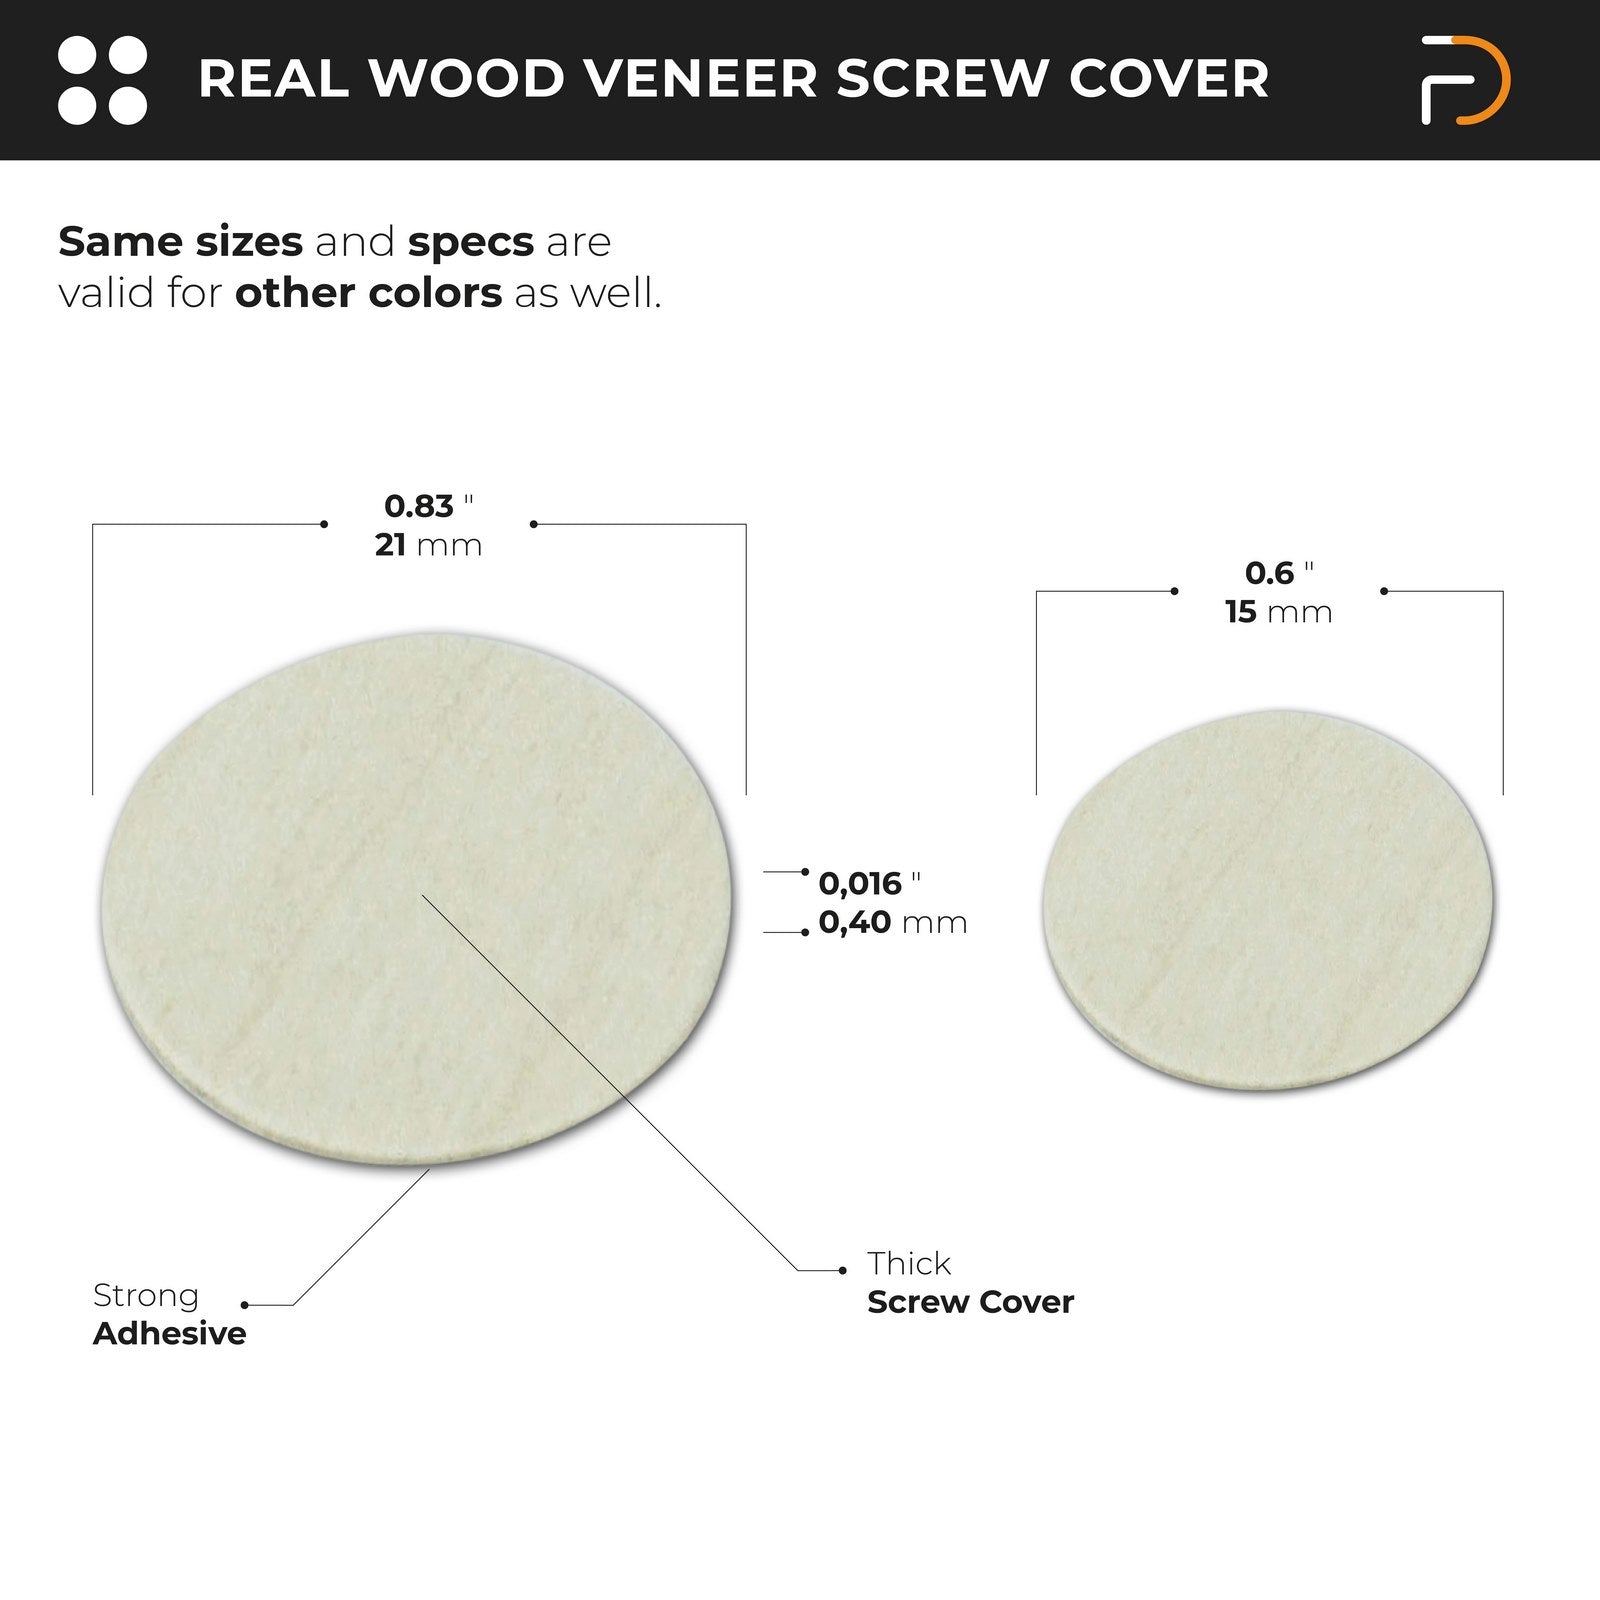 Self-Adhesive Real Wood Veneer Screw Cover Caps - Red Oak